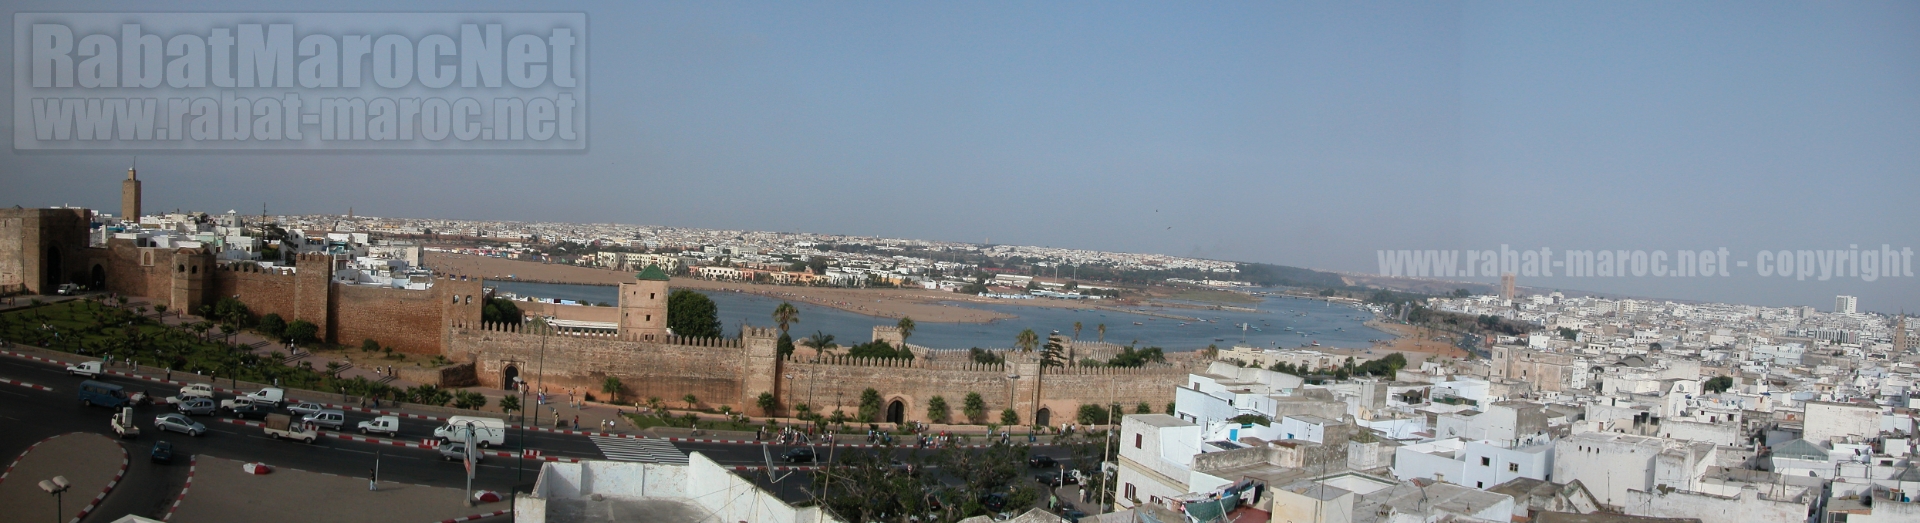 kasbah oudayas jusqu'au pont moulay hassan 2004 plan large